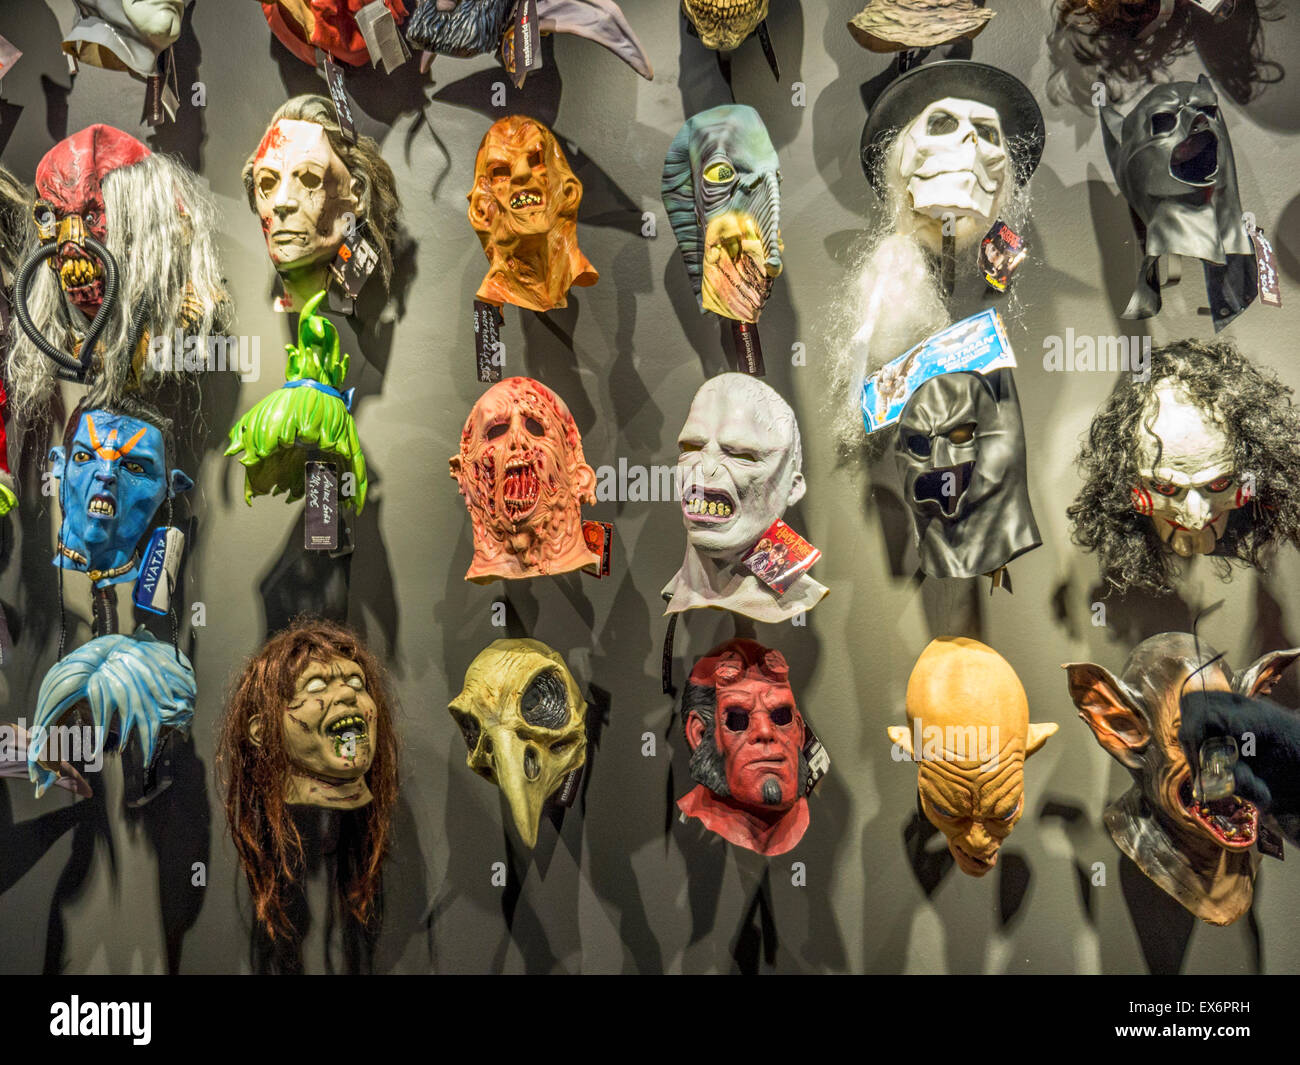 Berlin ausgefallener, Maske Wand im Shop verkaufen, Masken, Kostüme  Outfits, Maskerade-Kostüme und theatralische Zubehör Stockfotografie - Alamy